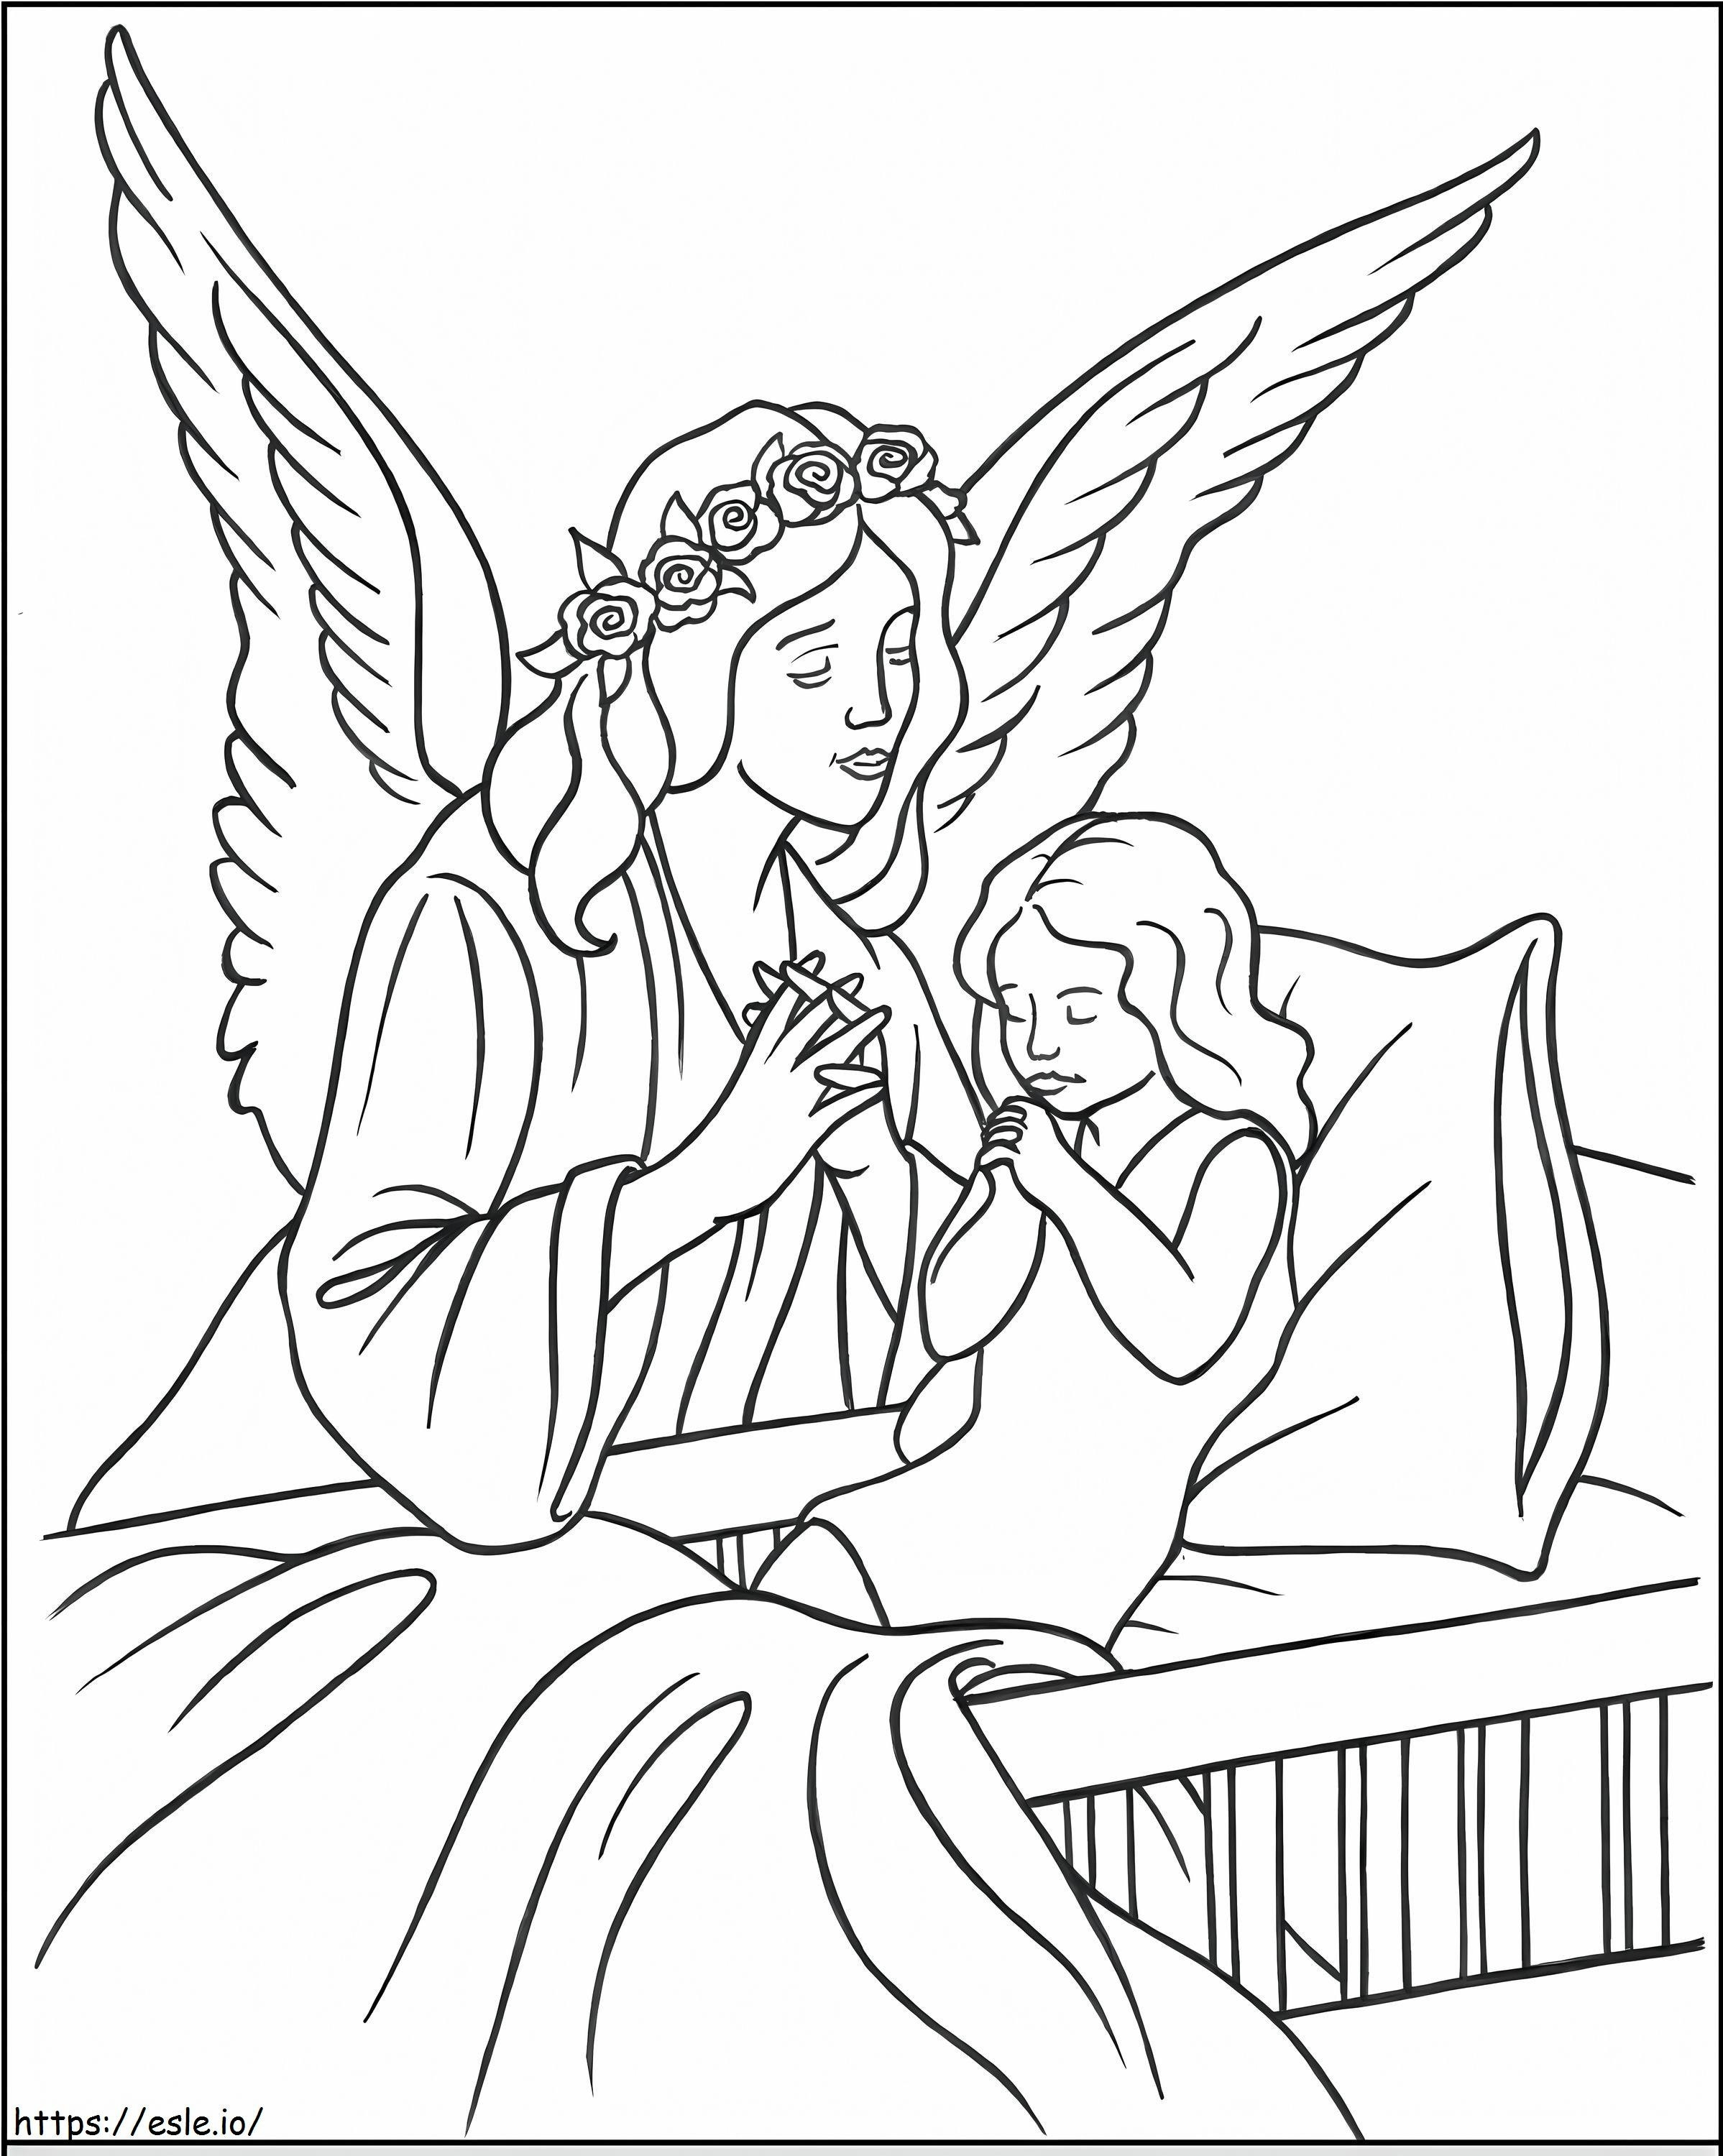 anjo com criança para colorir